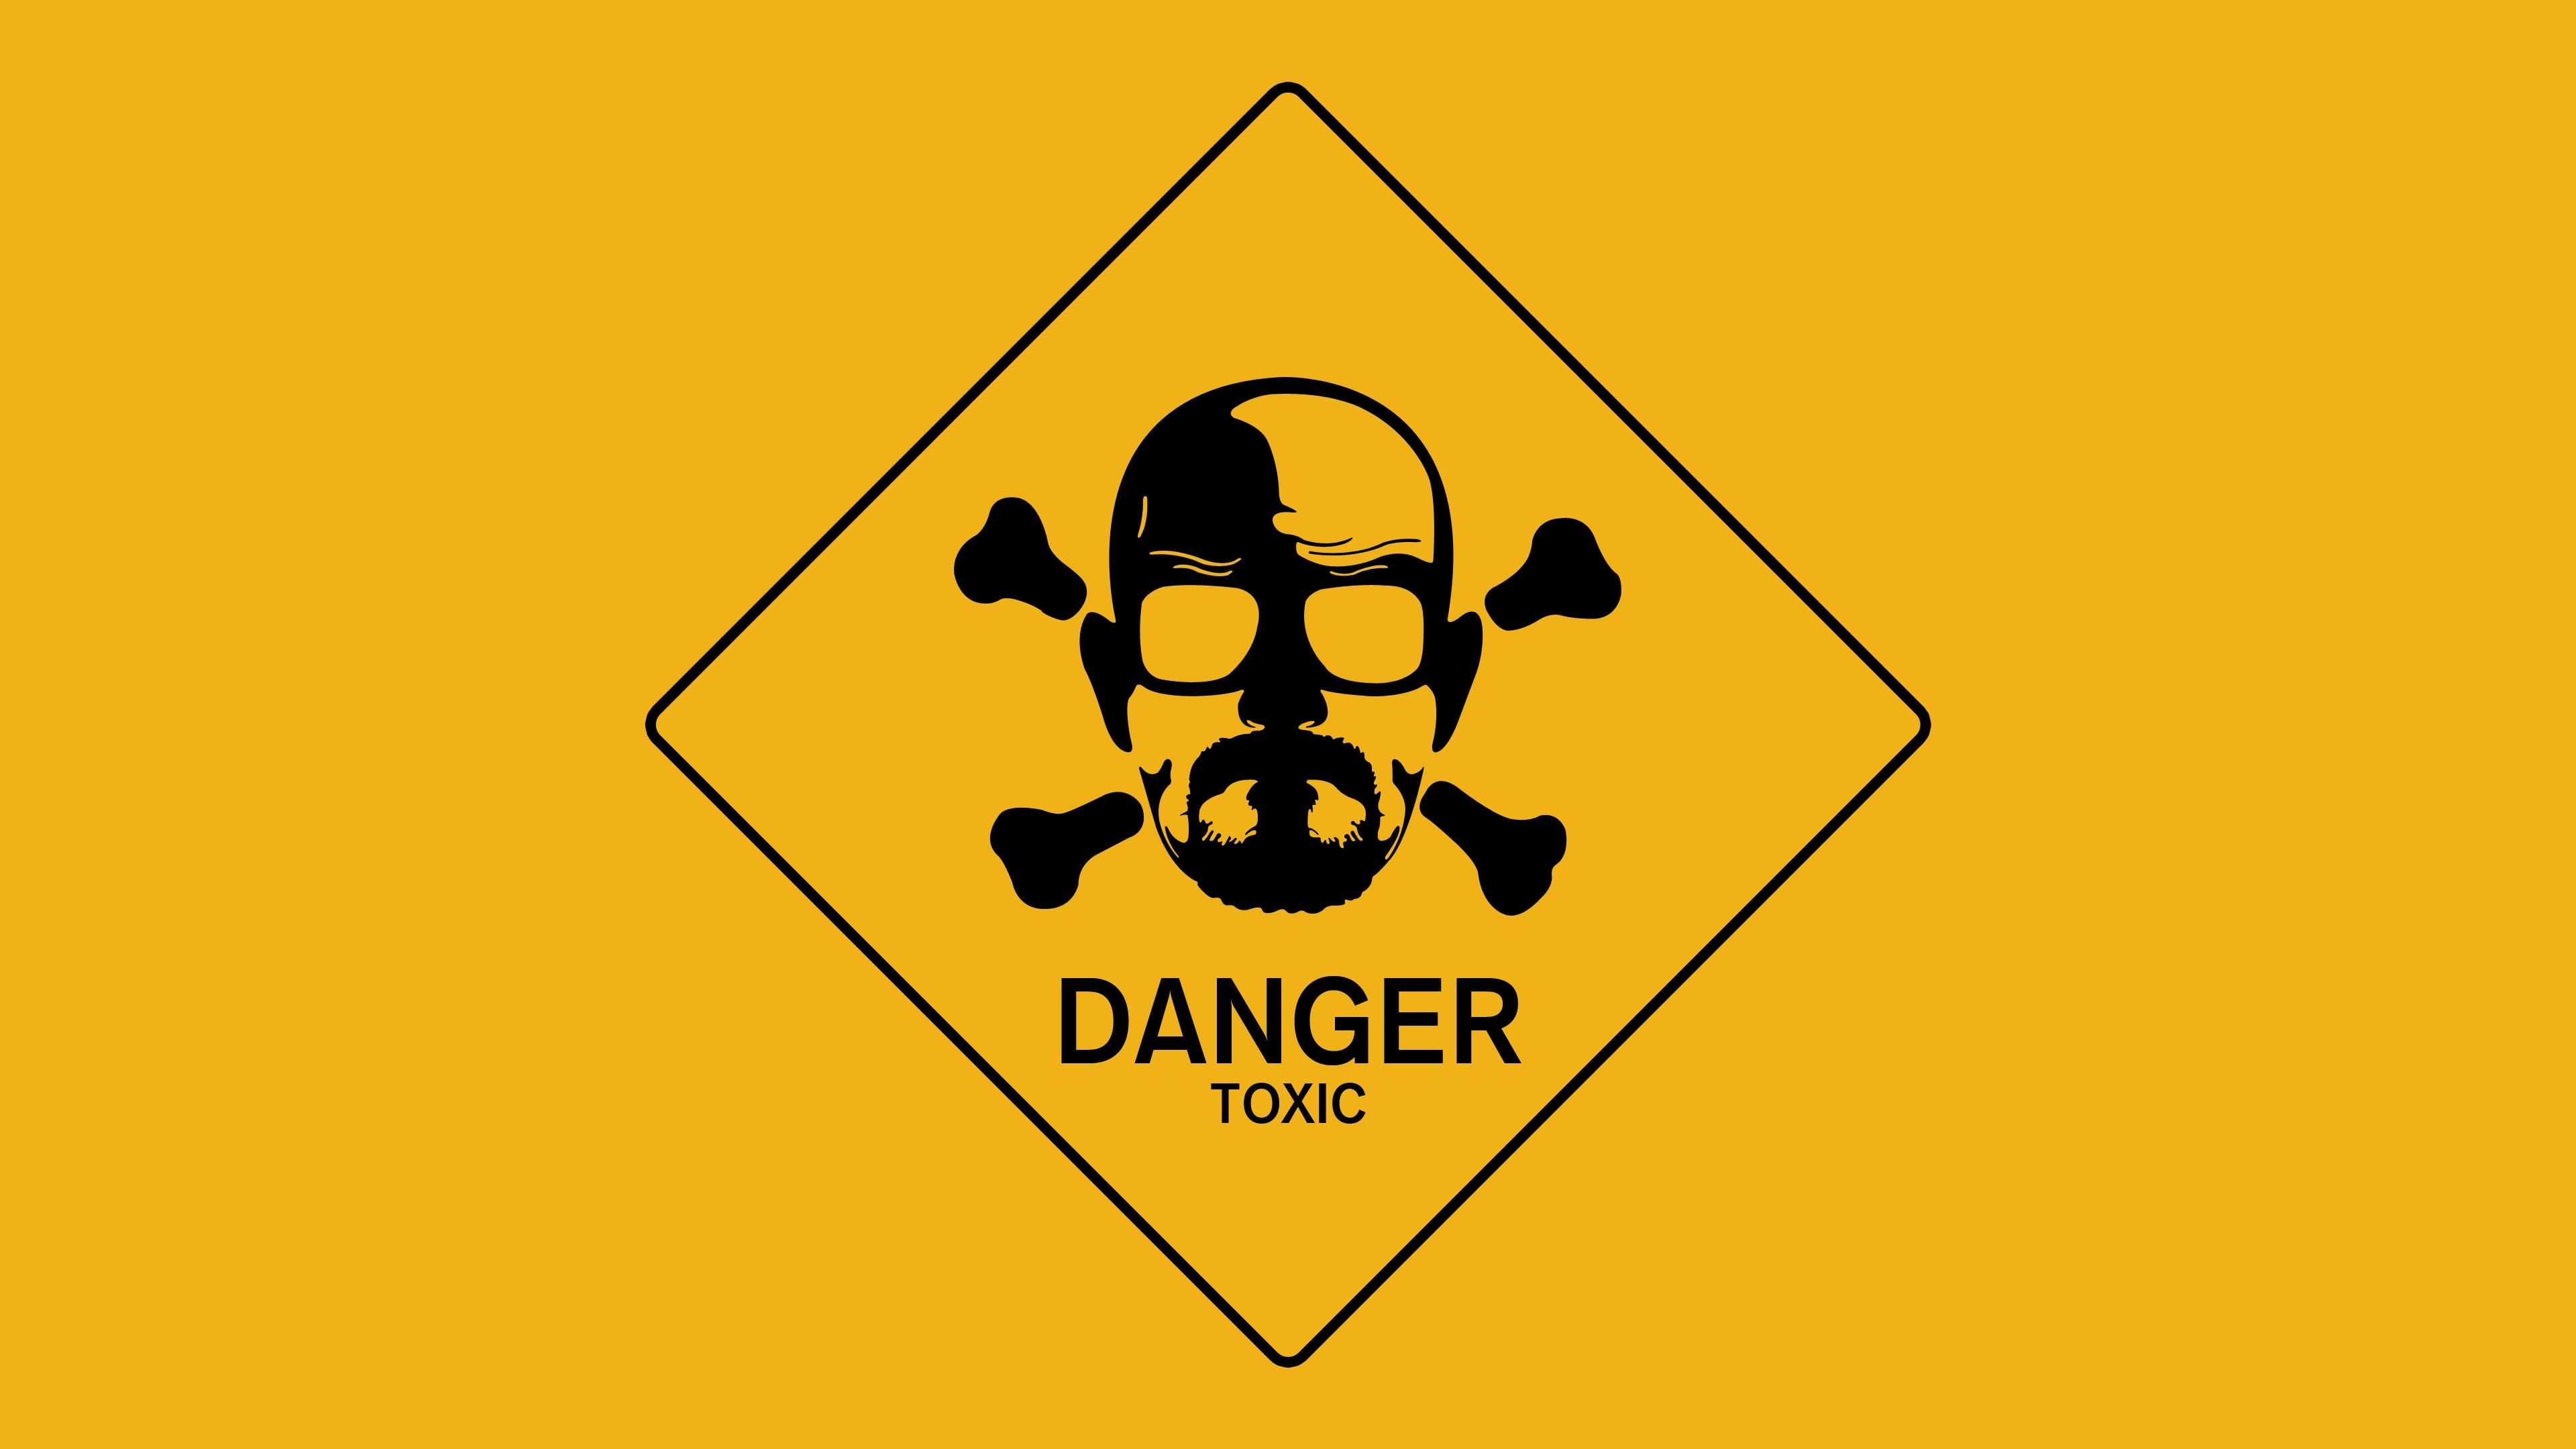 Breaking Bad: Danger, toxic